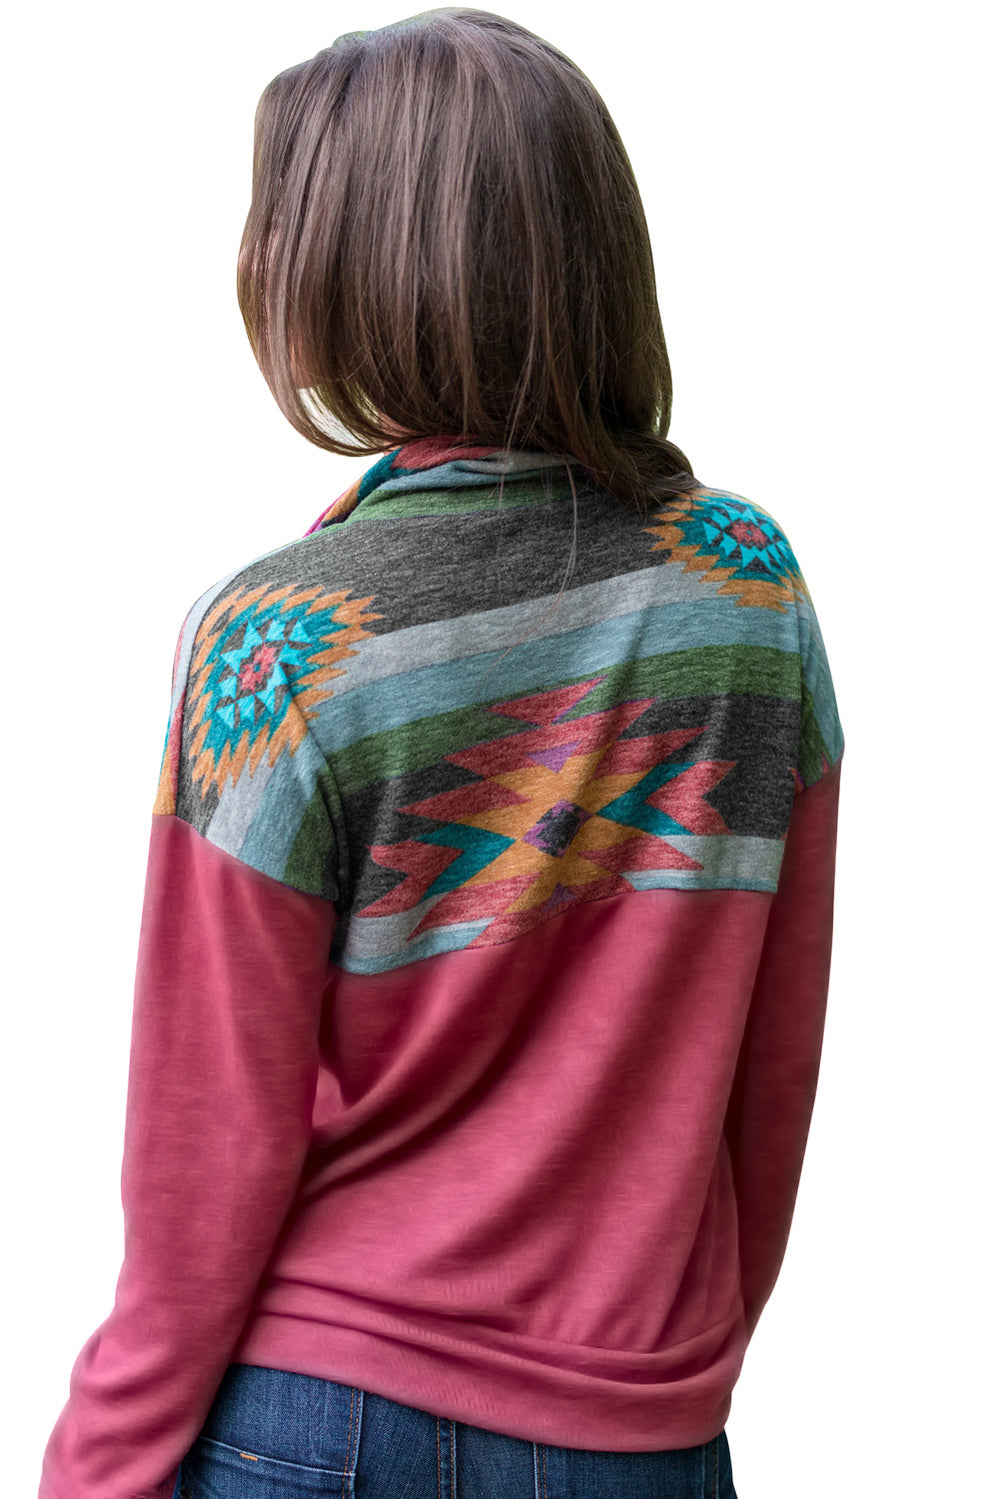 Women Aztec Print Atop Rosy Pullover Sweatshirt